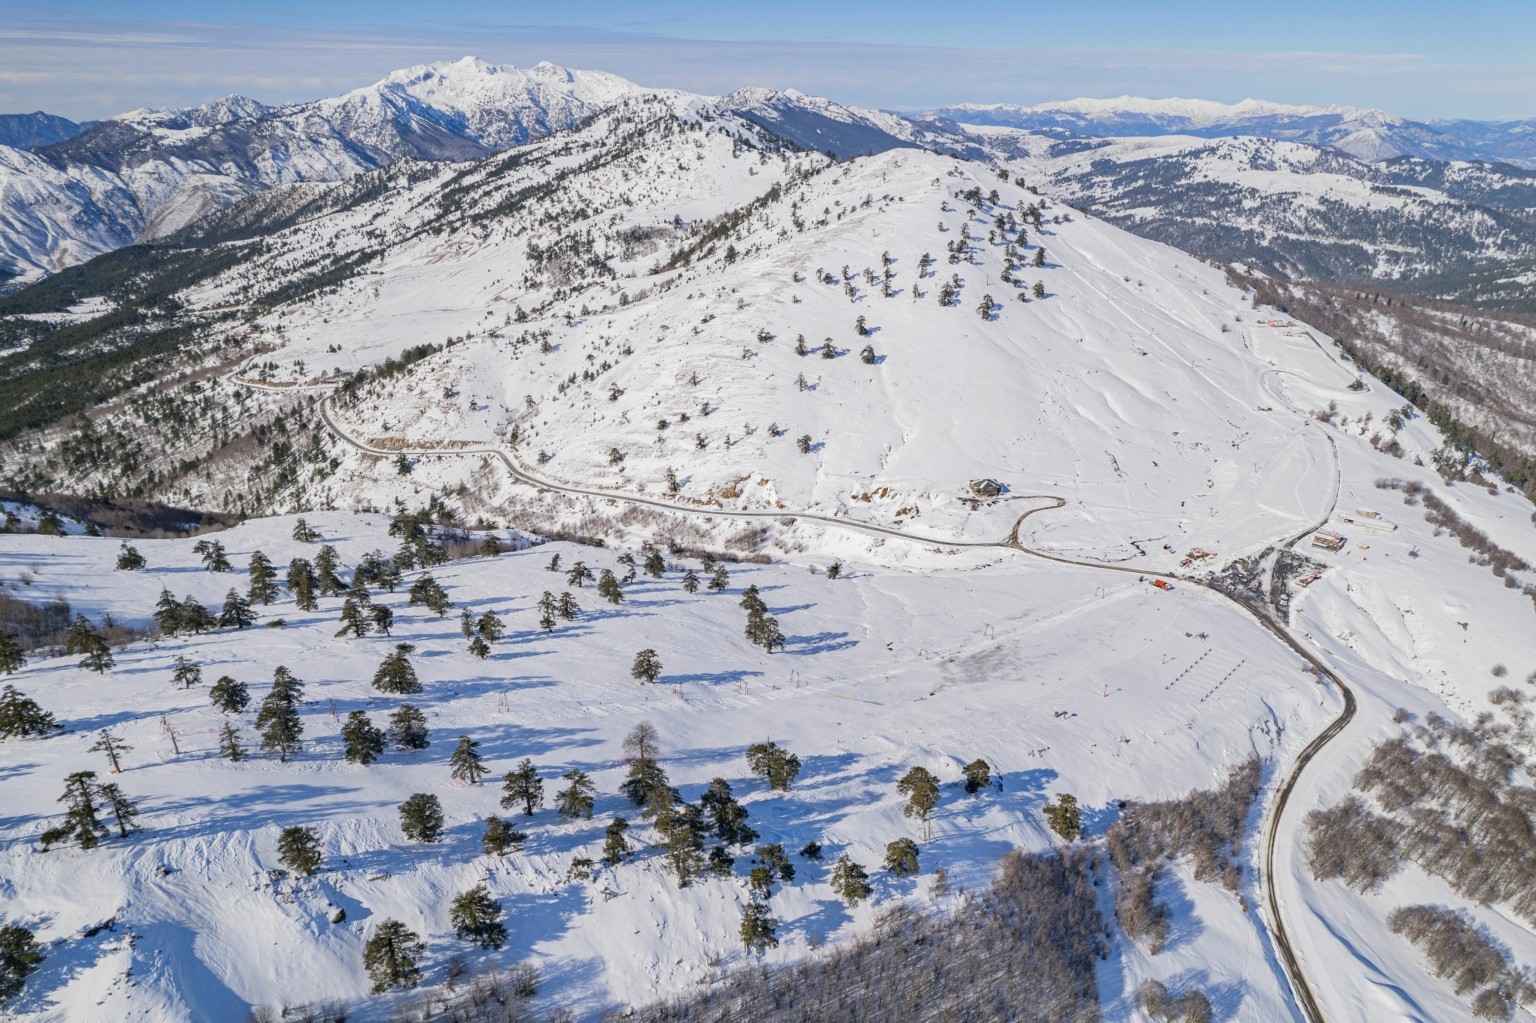 ΤΑΙΠΕΔ: Ξεκινά ο διαγωνισμός για την αξιοποίηση του Εθνικού Χιονοδρομικού Κέντρου Βασιλίτσας